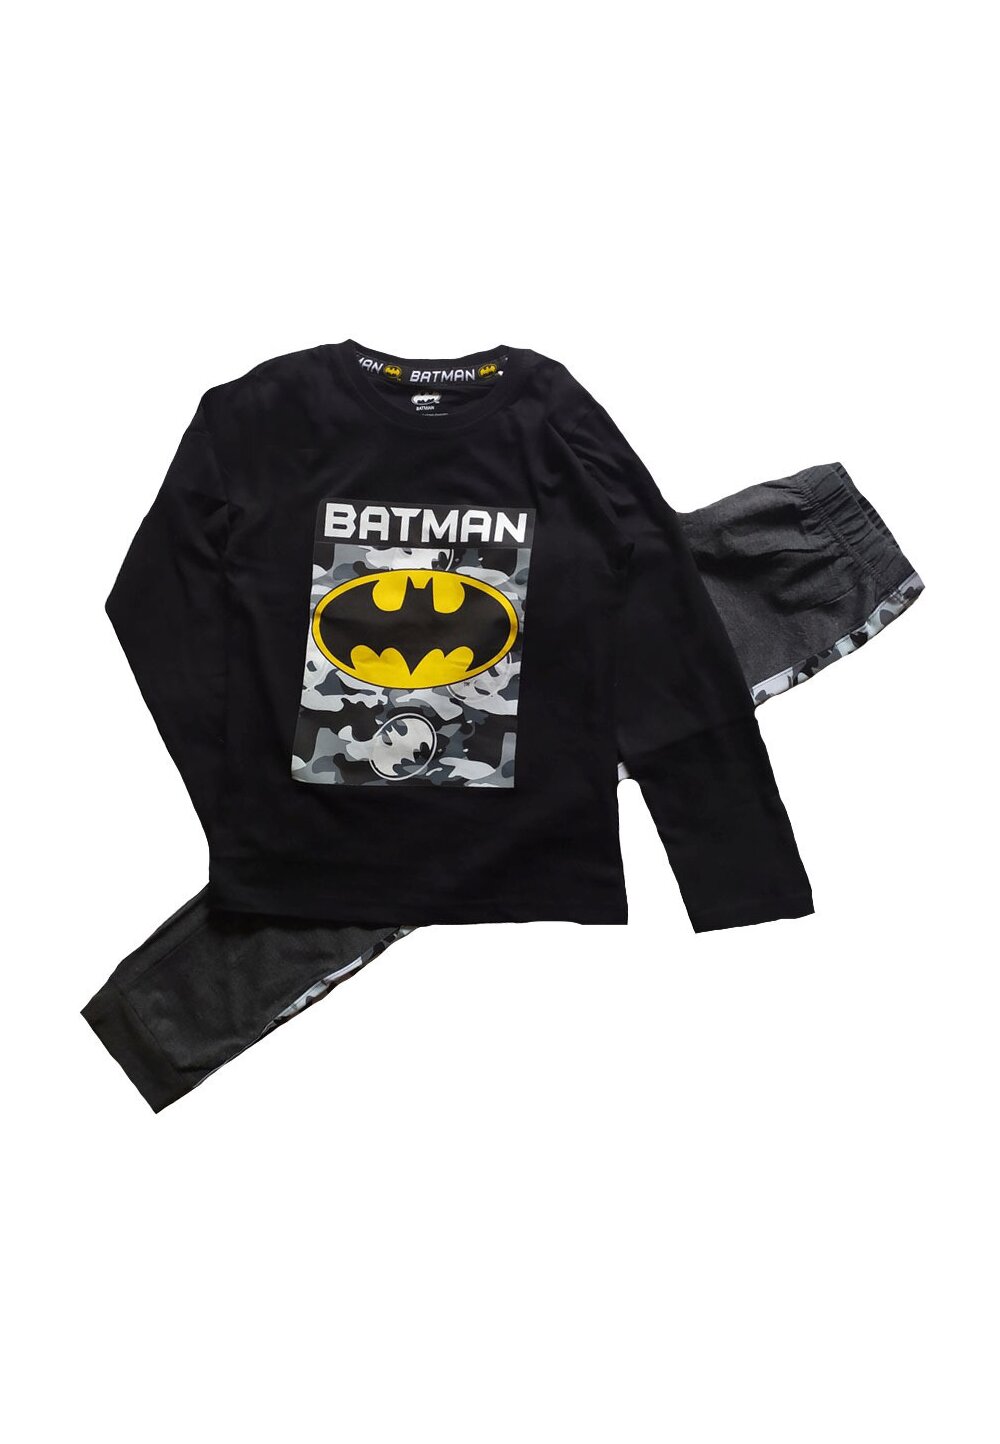 Pijama maneca lunga, bumbac 93%, Batman, negru 93%